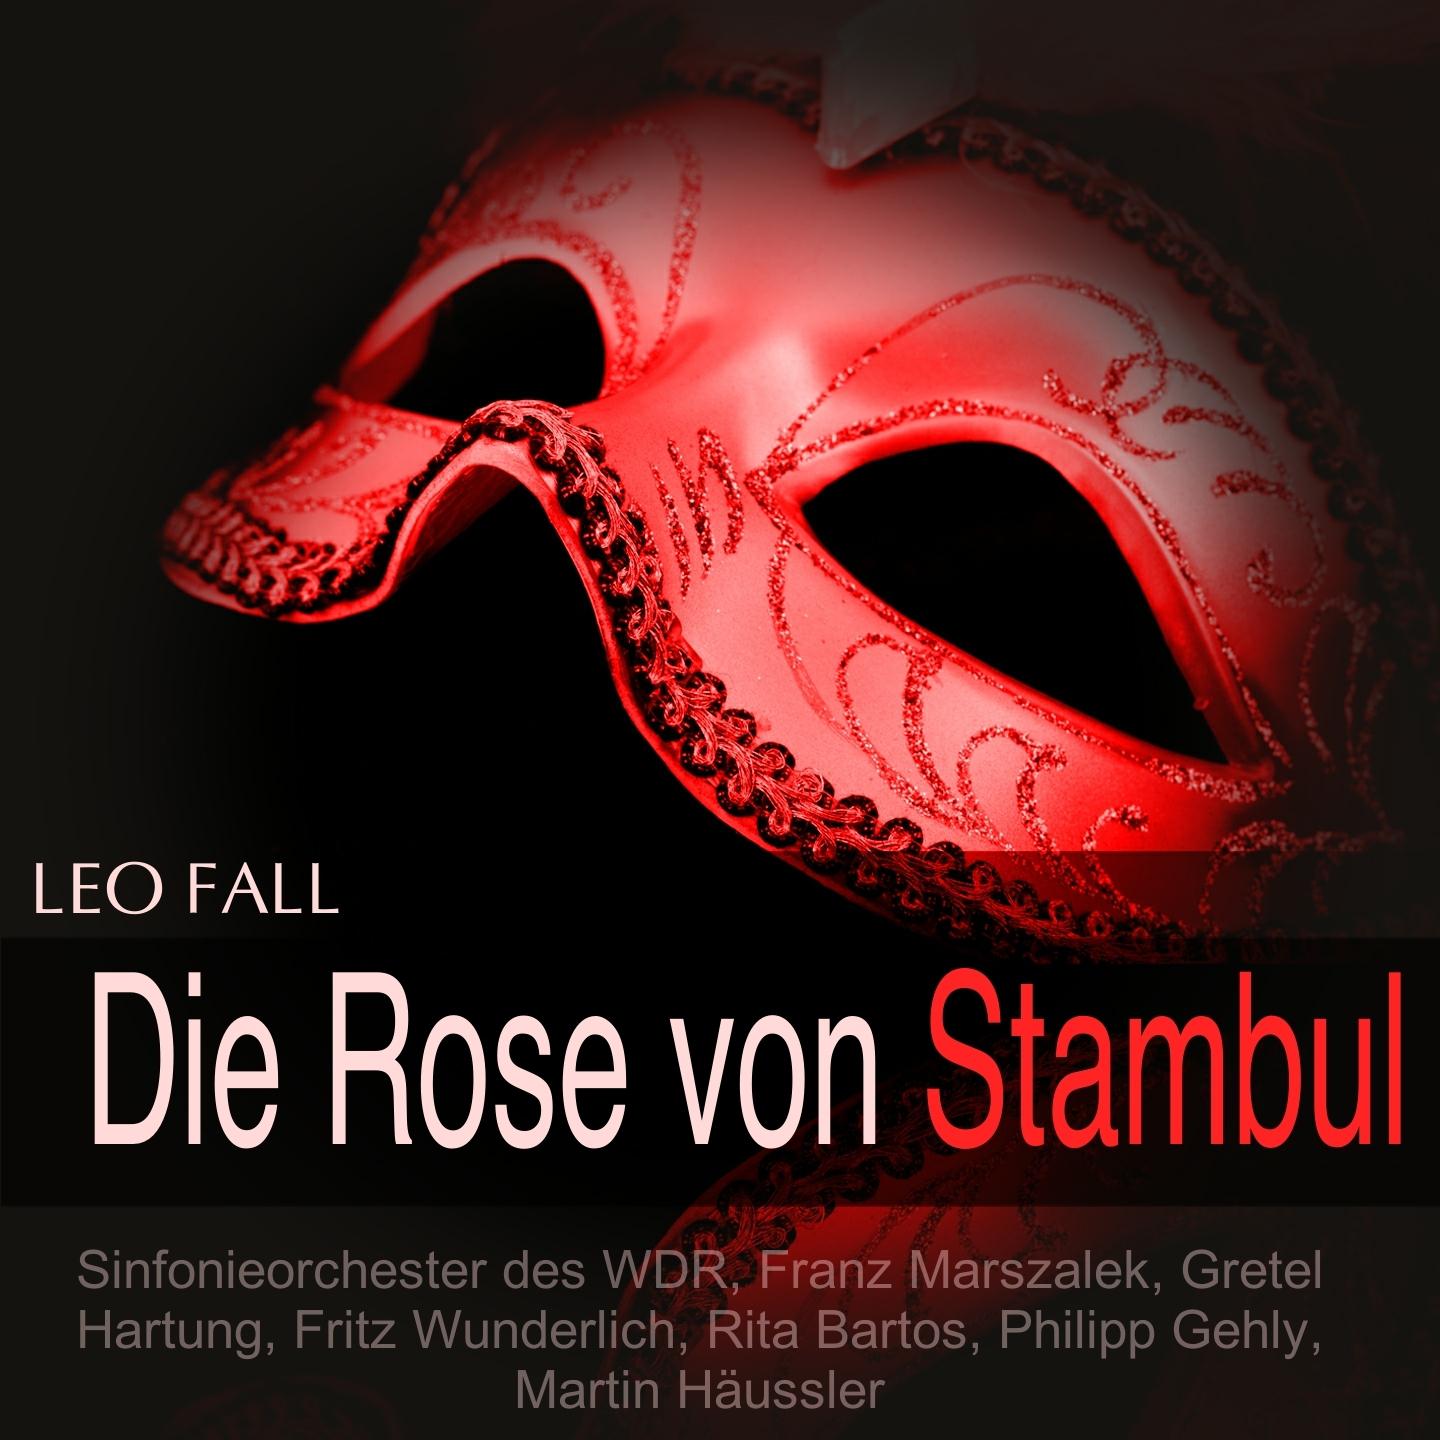 Die Rose von Stambul, Act I: "Guten Morgen, Kondja" - "Von Reformen" (Chor, Midili, Kondja)